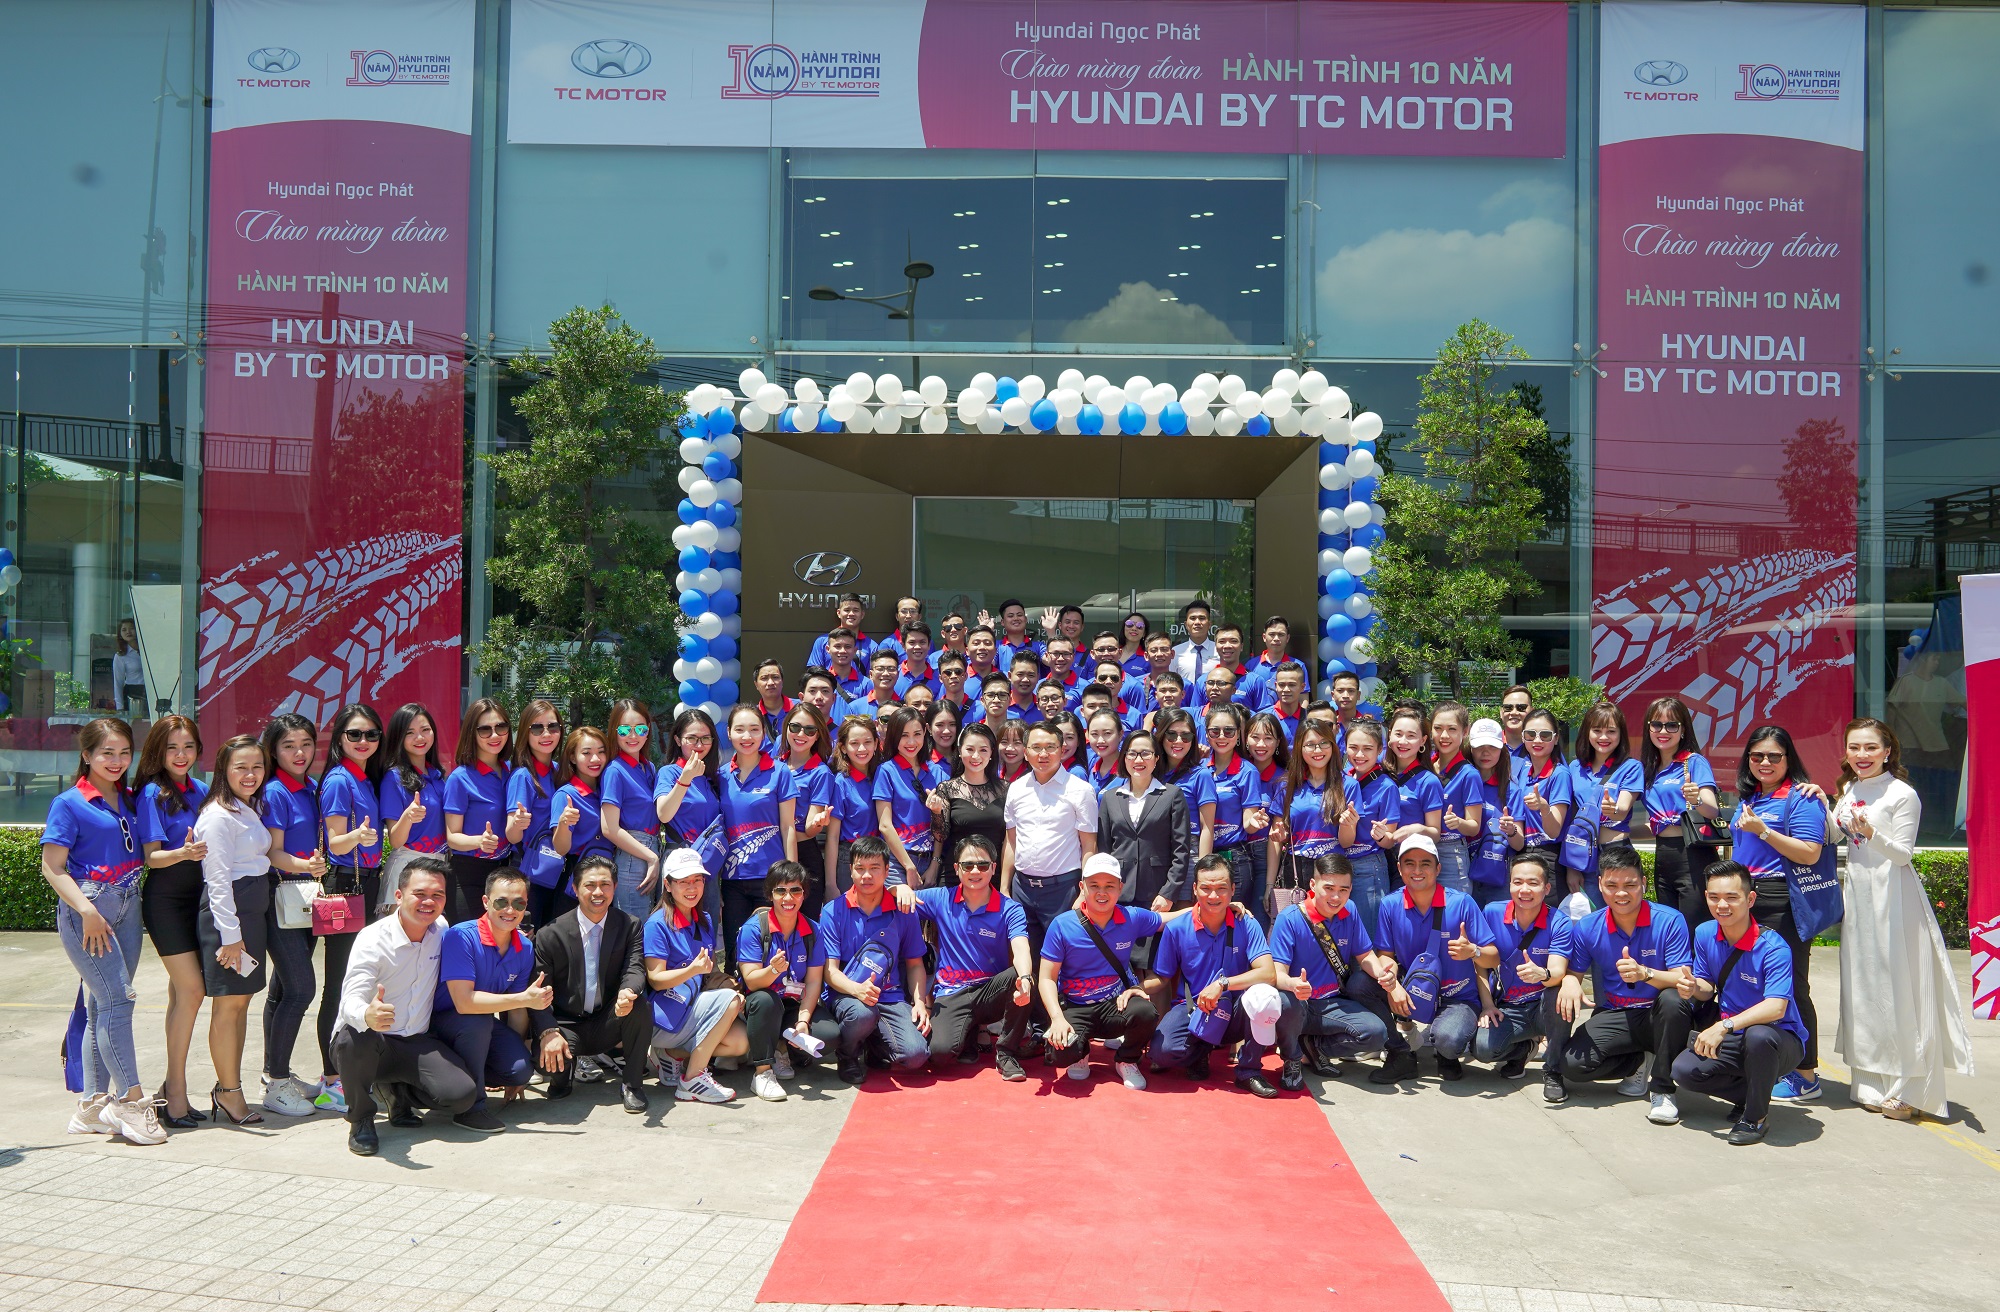 Hyundai Ngọc Phát Chào Mừng Hành Trình Caravan 10 Năm - Hyundai By TC Motor